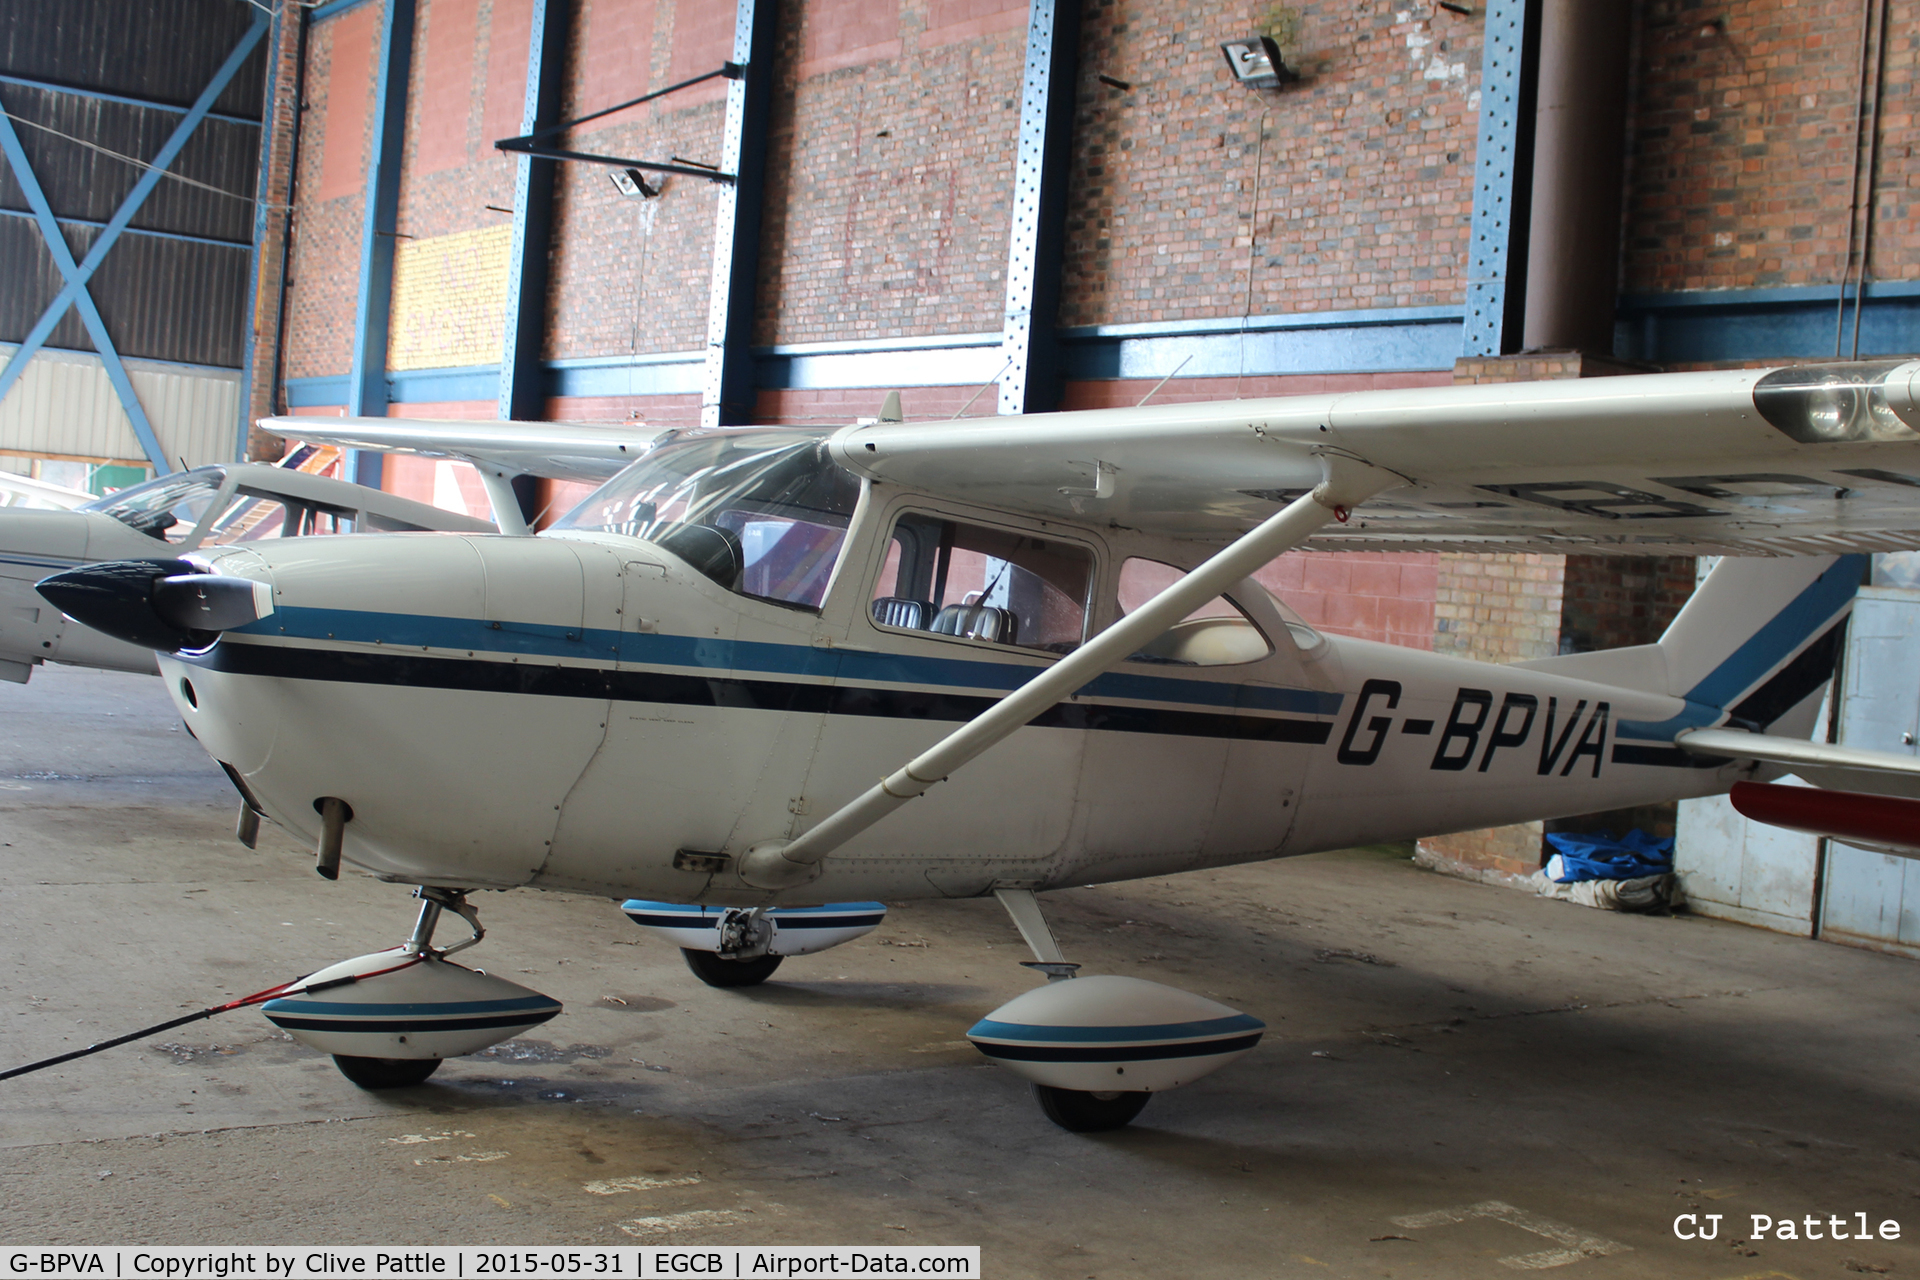 G-BPVA, 1965 Cessna 172F C/N 17252286, Hangared at Barton Airfield, Manchester - EGCB